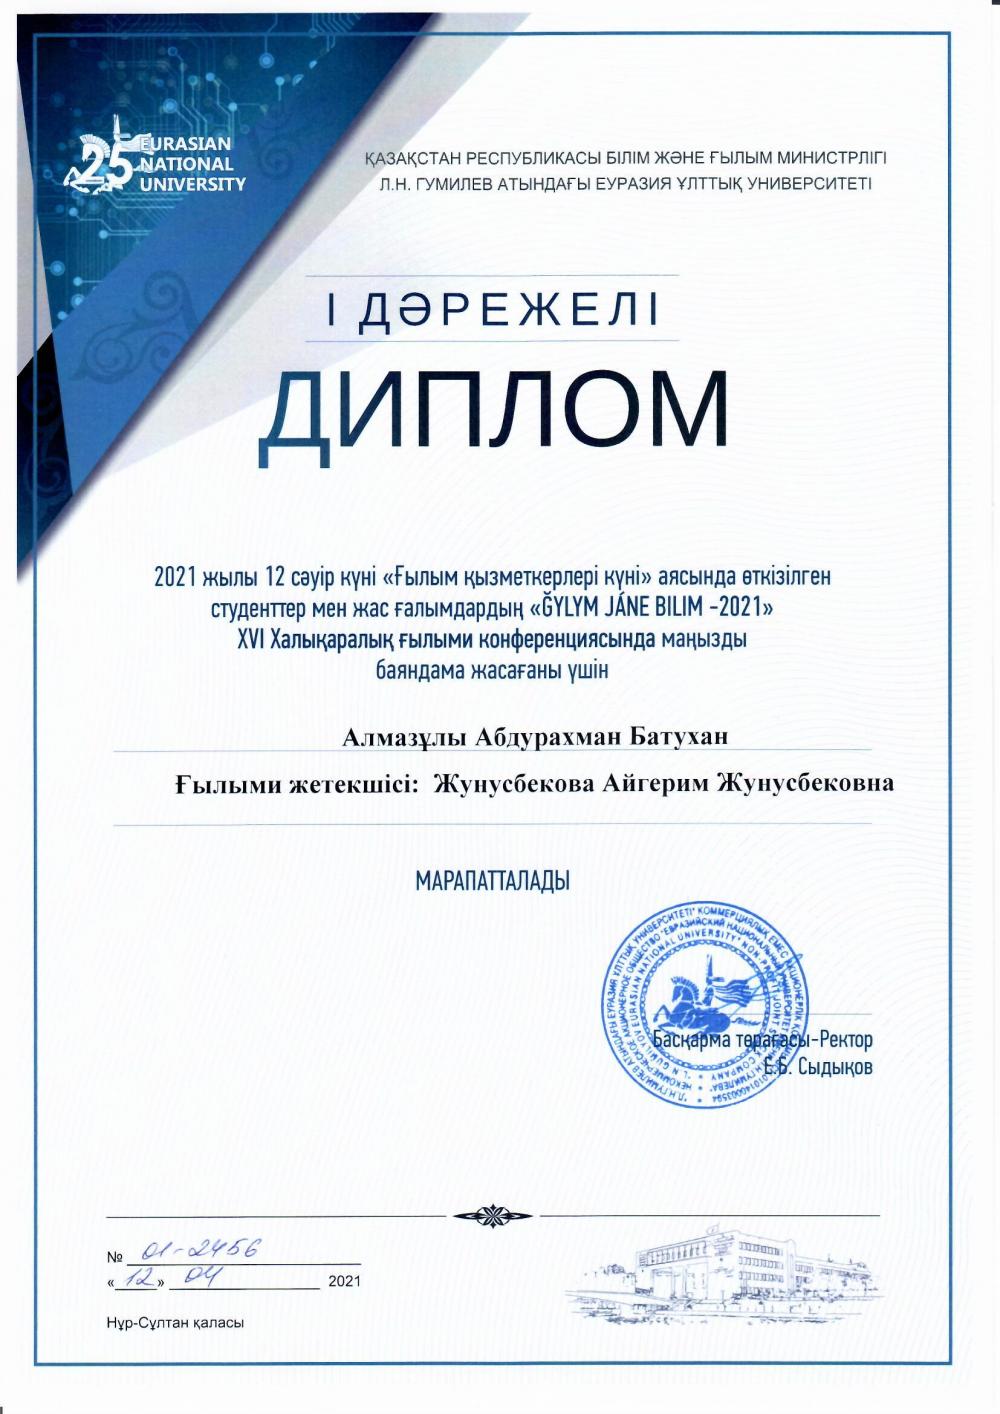 Кафедра международного права поздравляет лучших на мероприятии "Gylym jane bilim-2021"